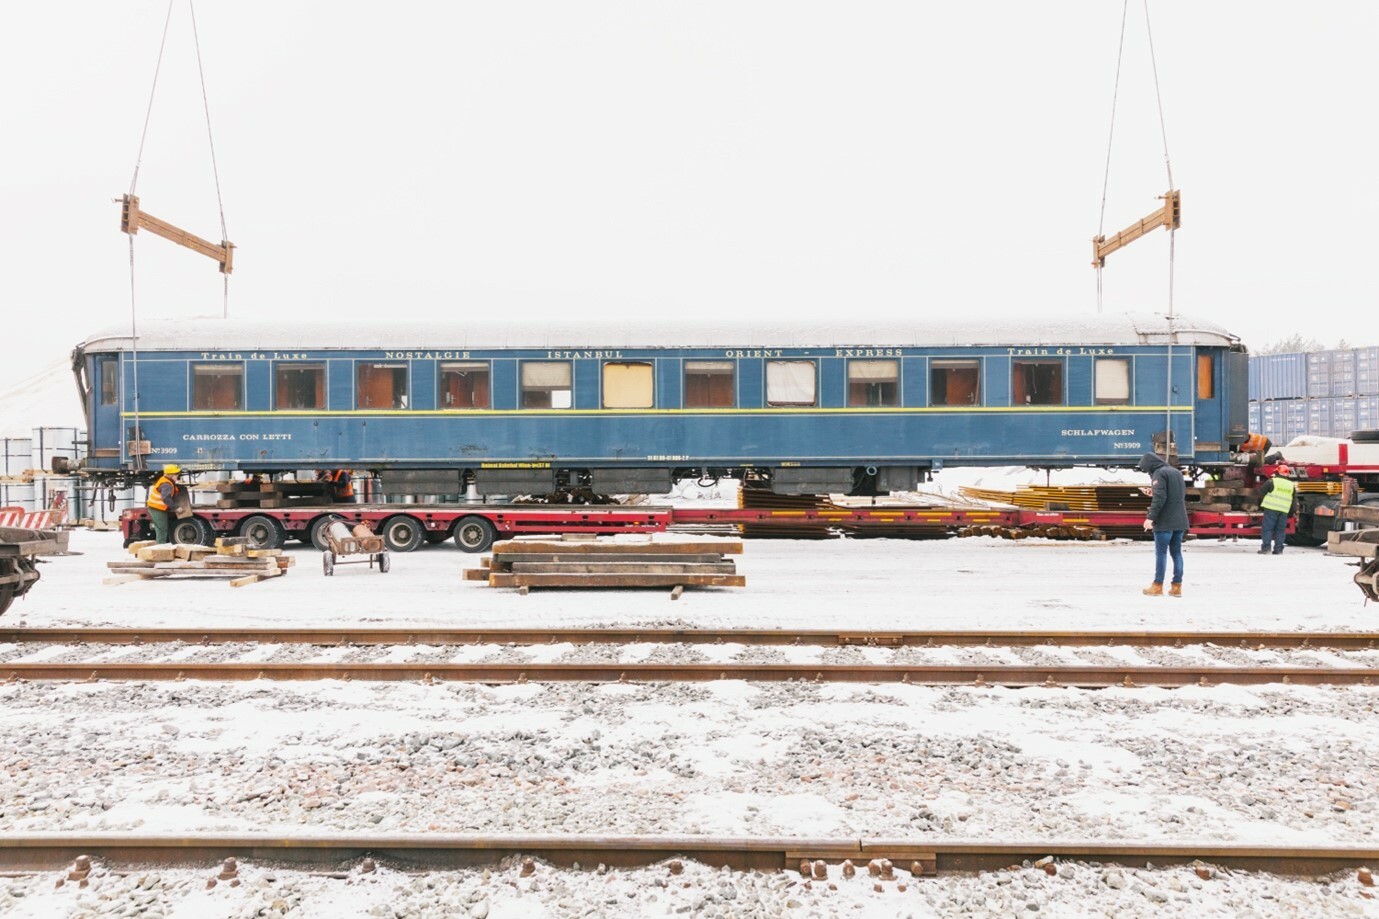 A budget Orient Express, Rail travel